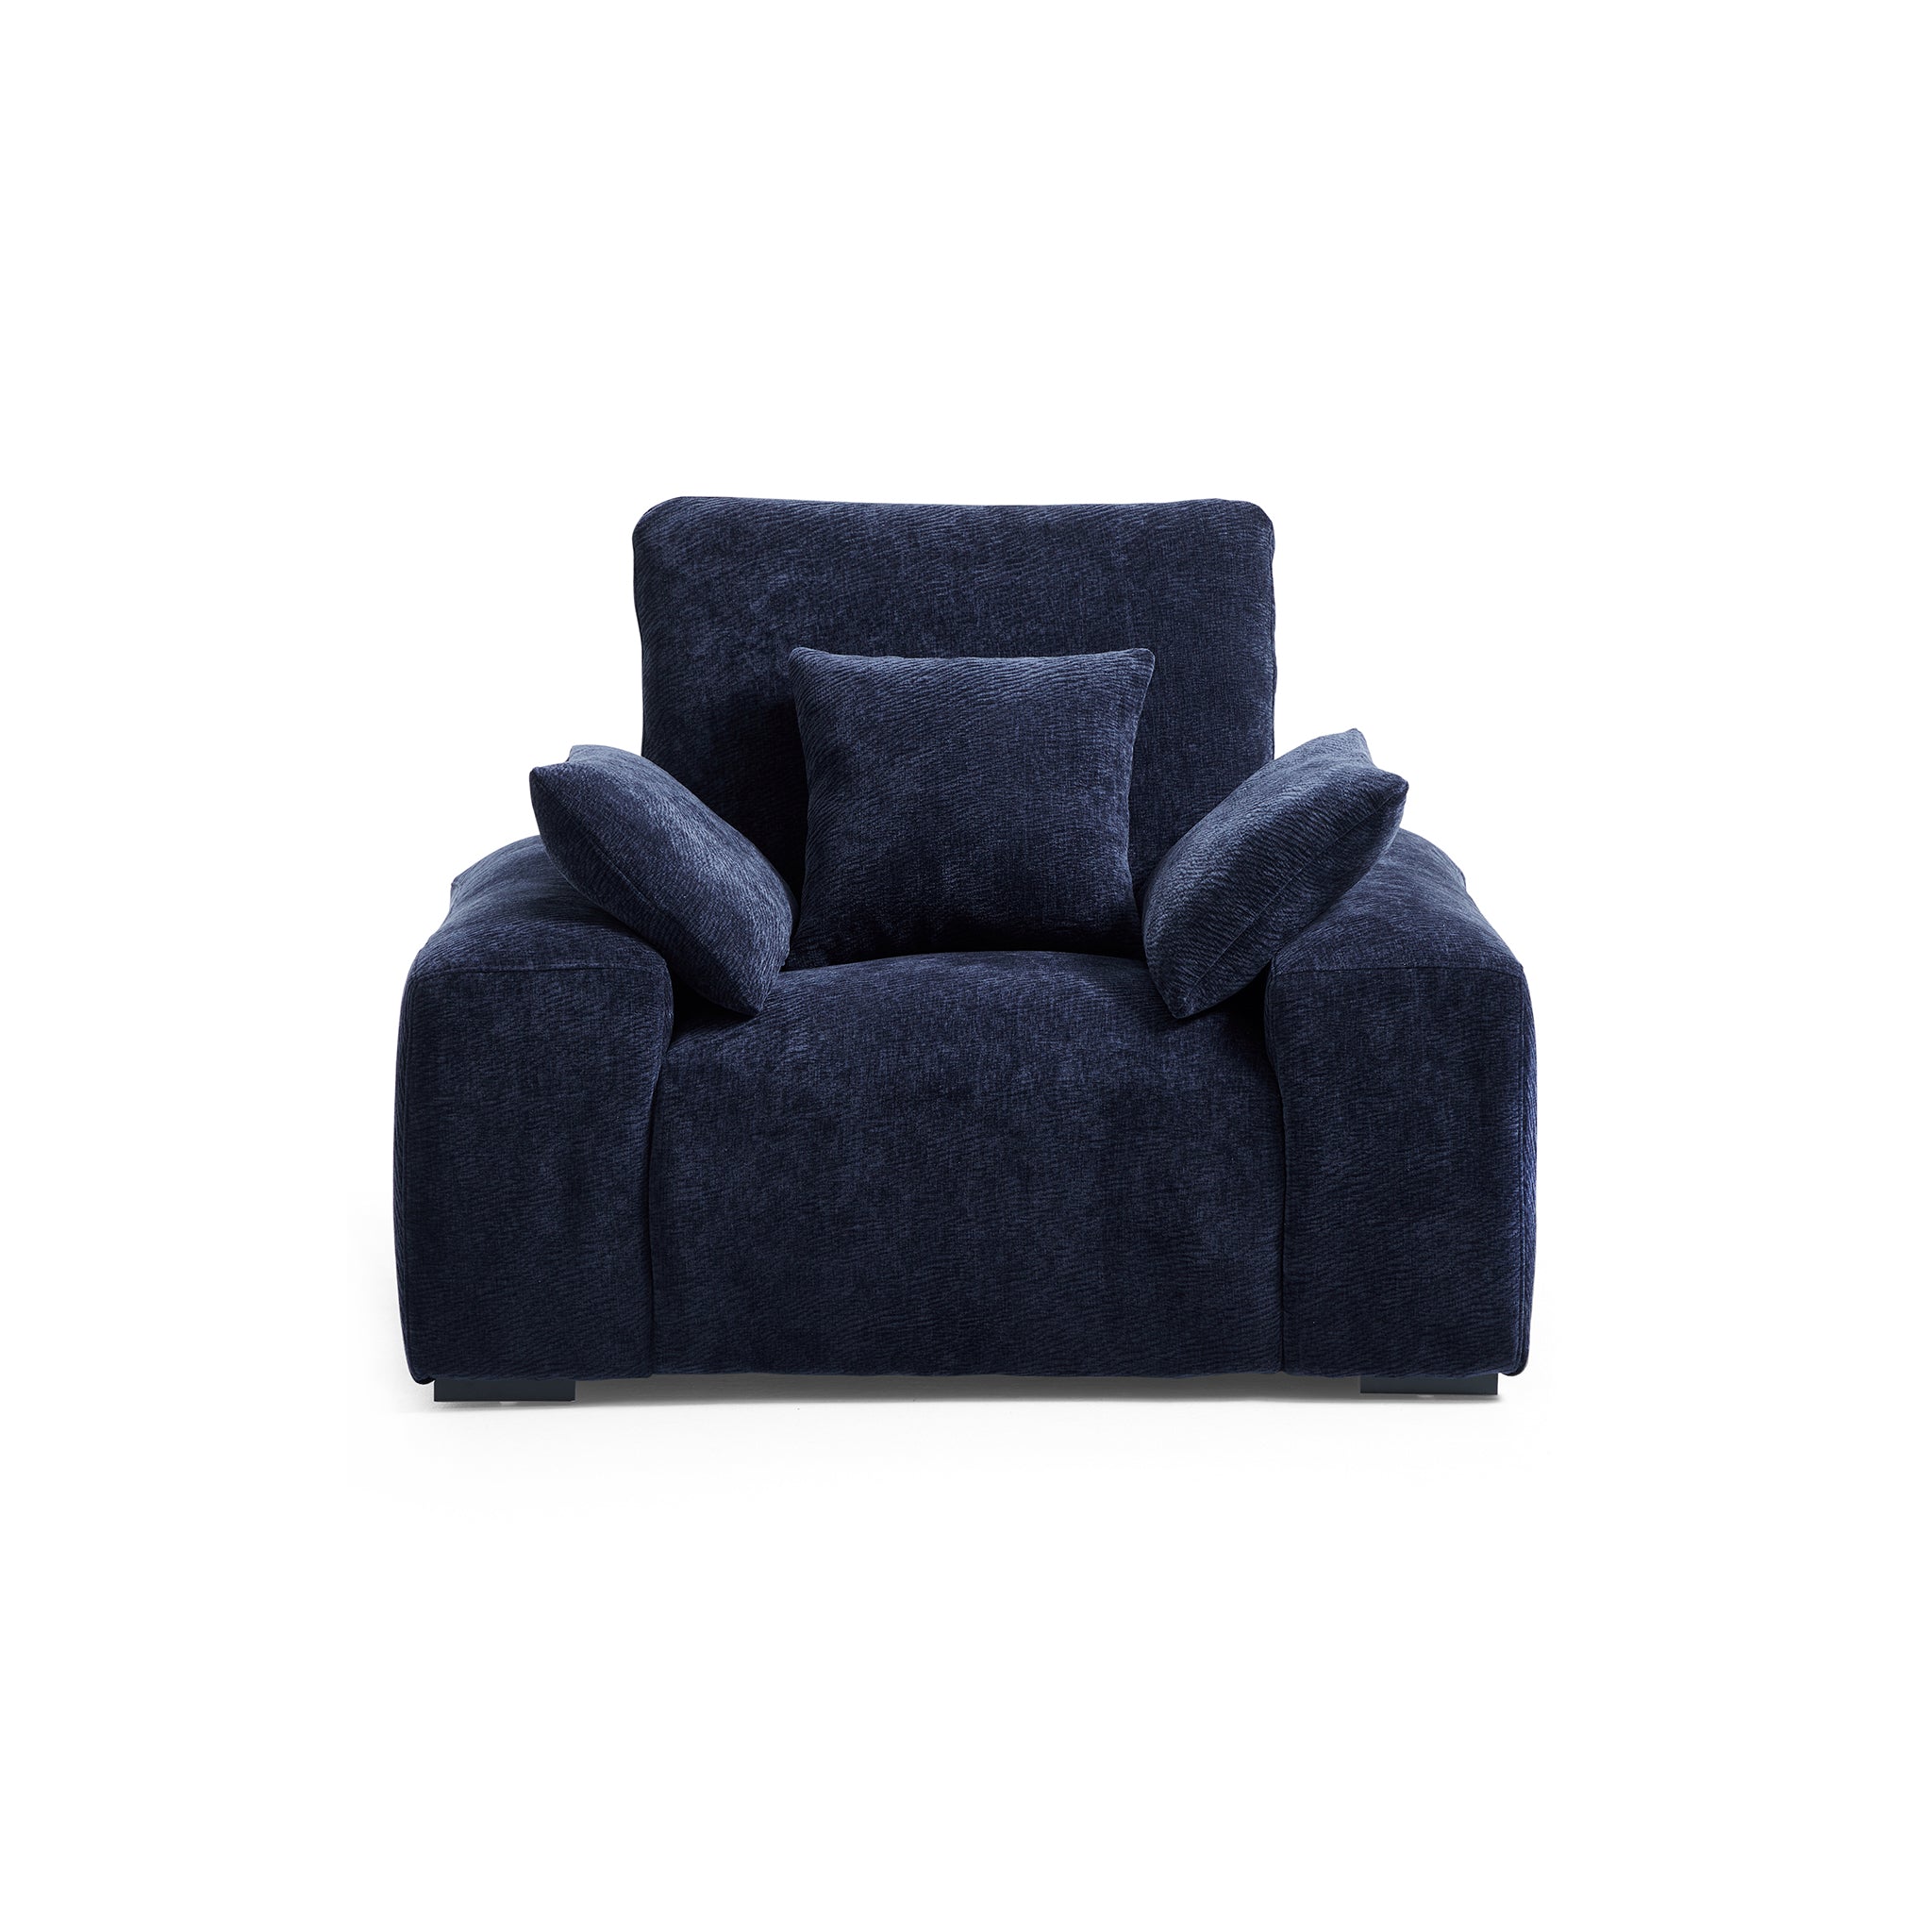 The Empress Navy Blue Armchair